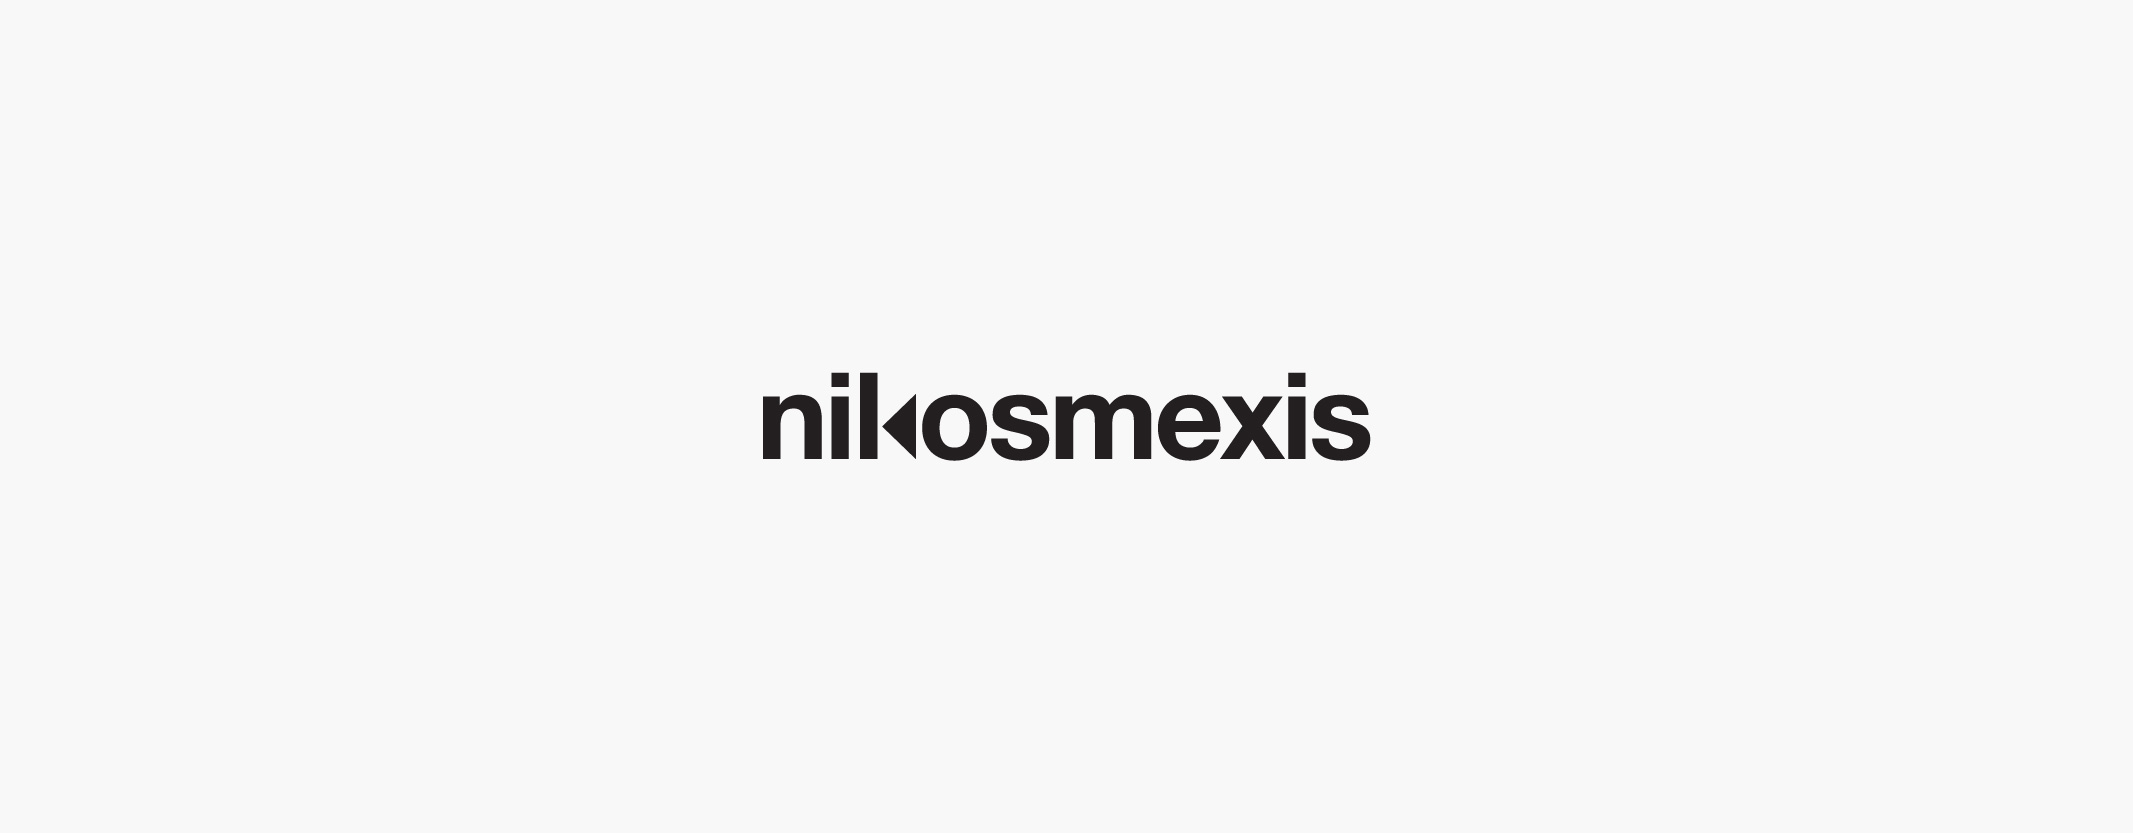 32_logos_nikosmexis